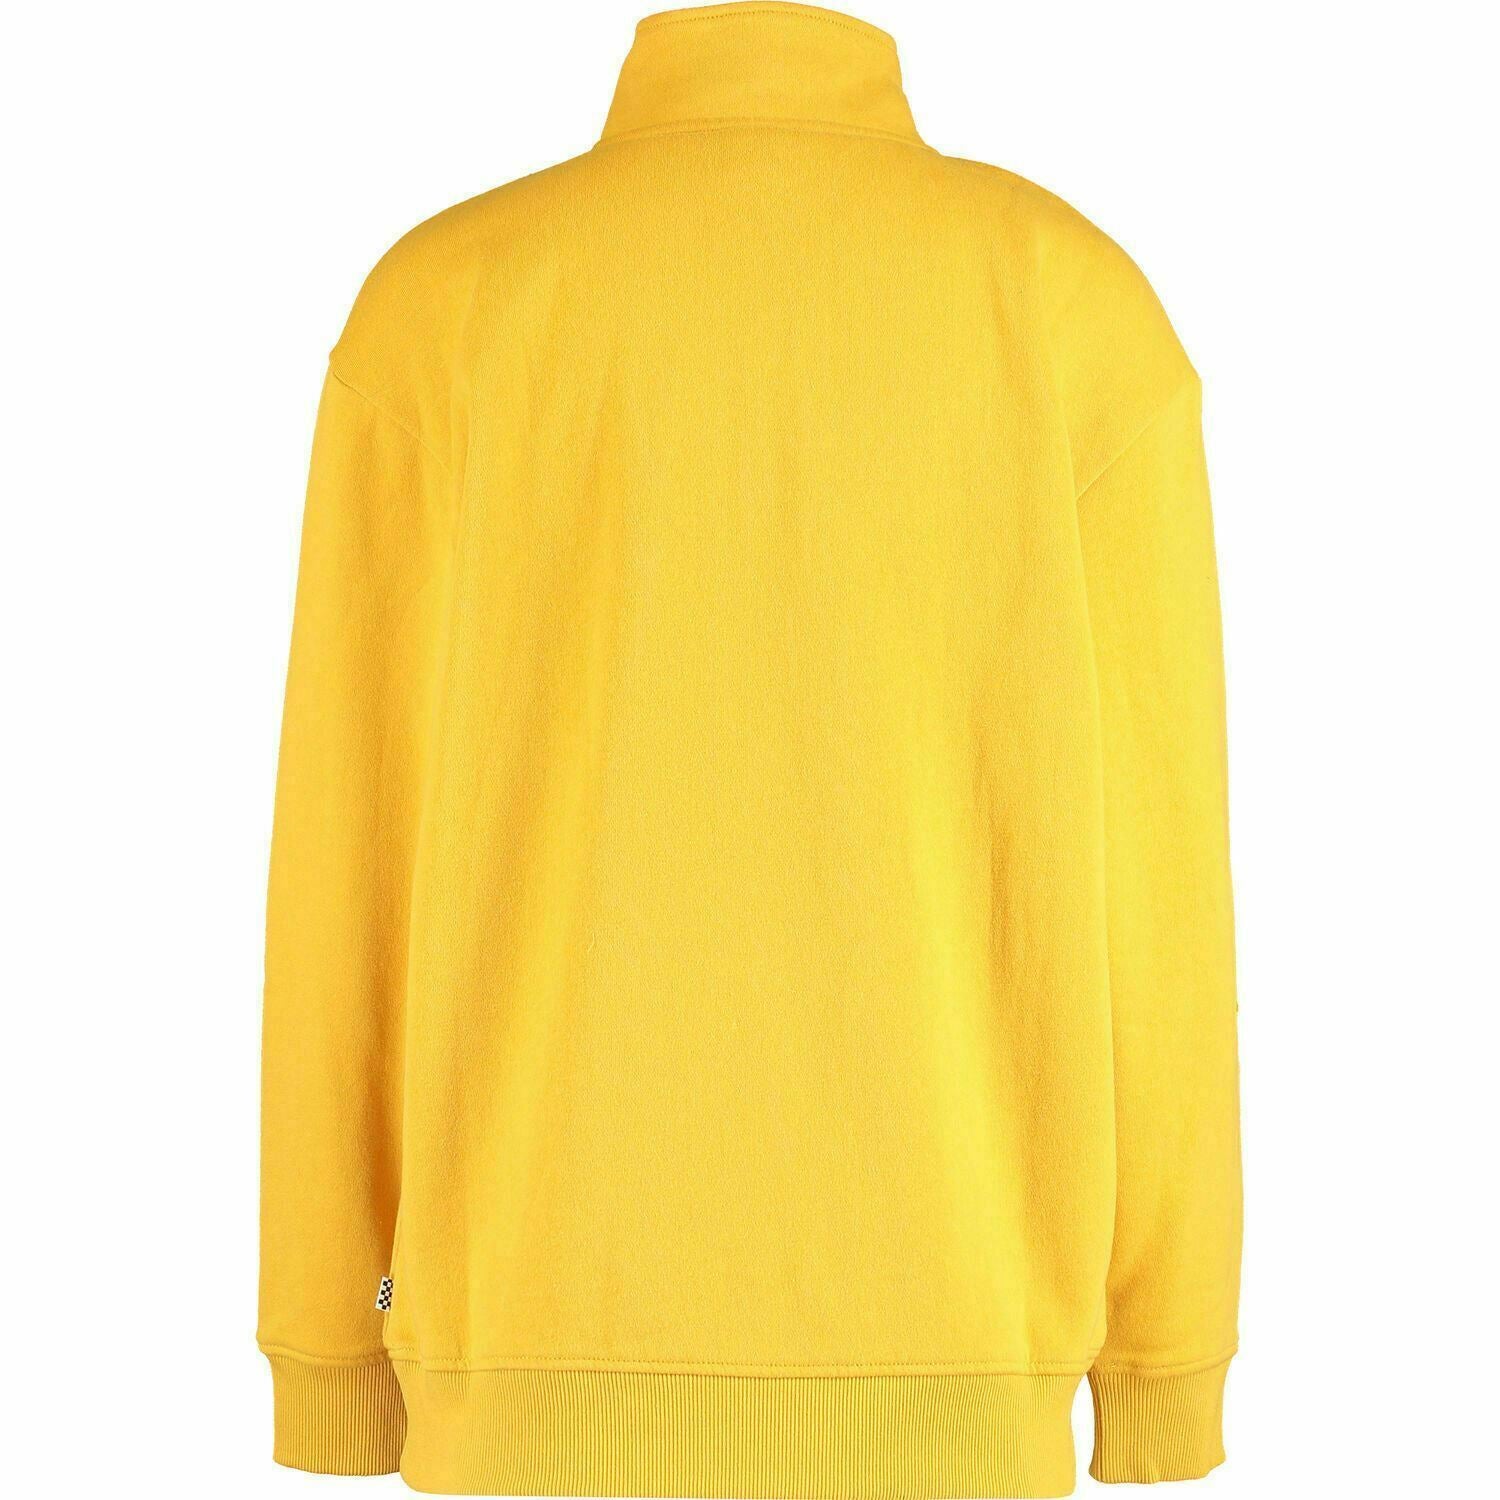 VANS Women's Sign It Mock Zip Crew Sweatshirt / Jumper, Yellow, size XS